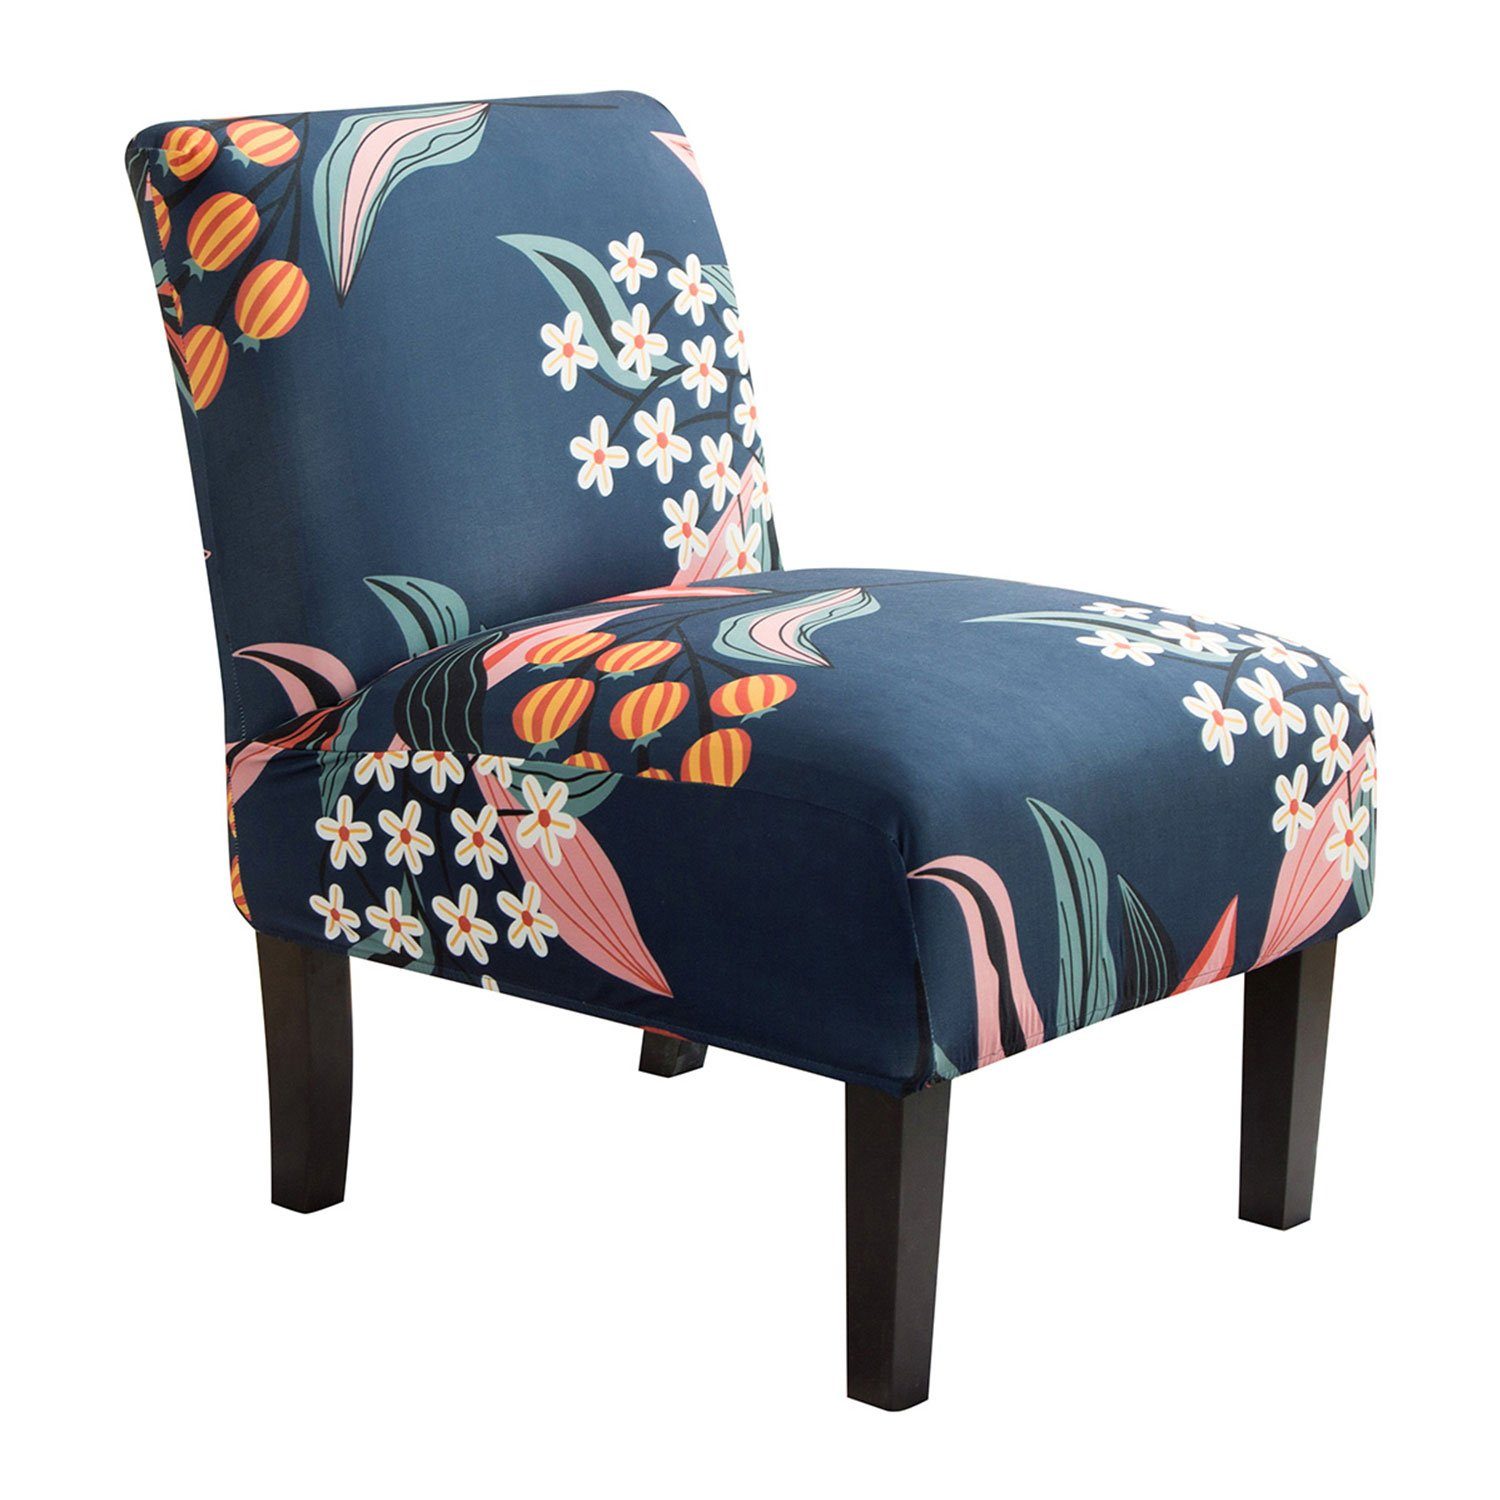 Stuhlhusse Stretch gedruckt floralen,Universal,für Akzentstuhl, Rosnek Blau